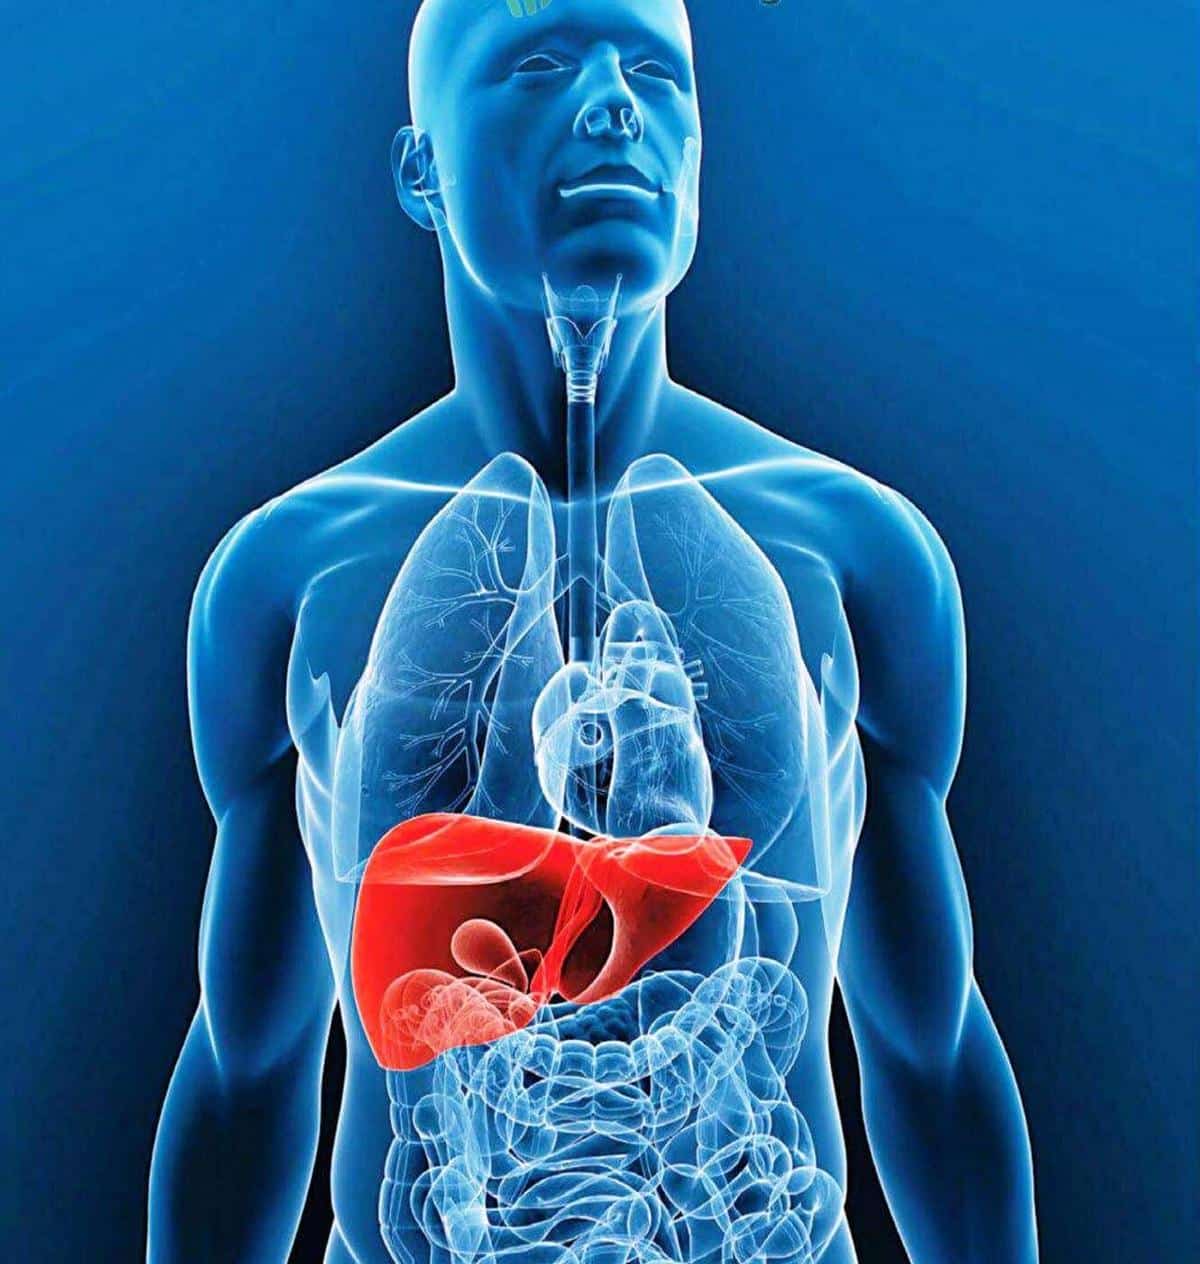 Hígado graso: qué es, síntomas, evolución, tratamiento y prevención